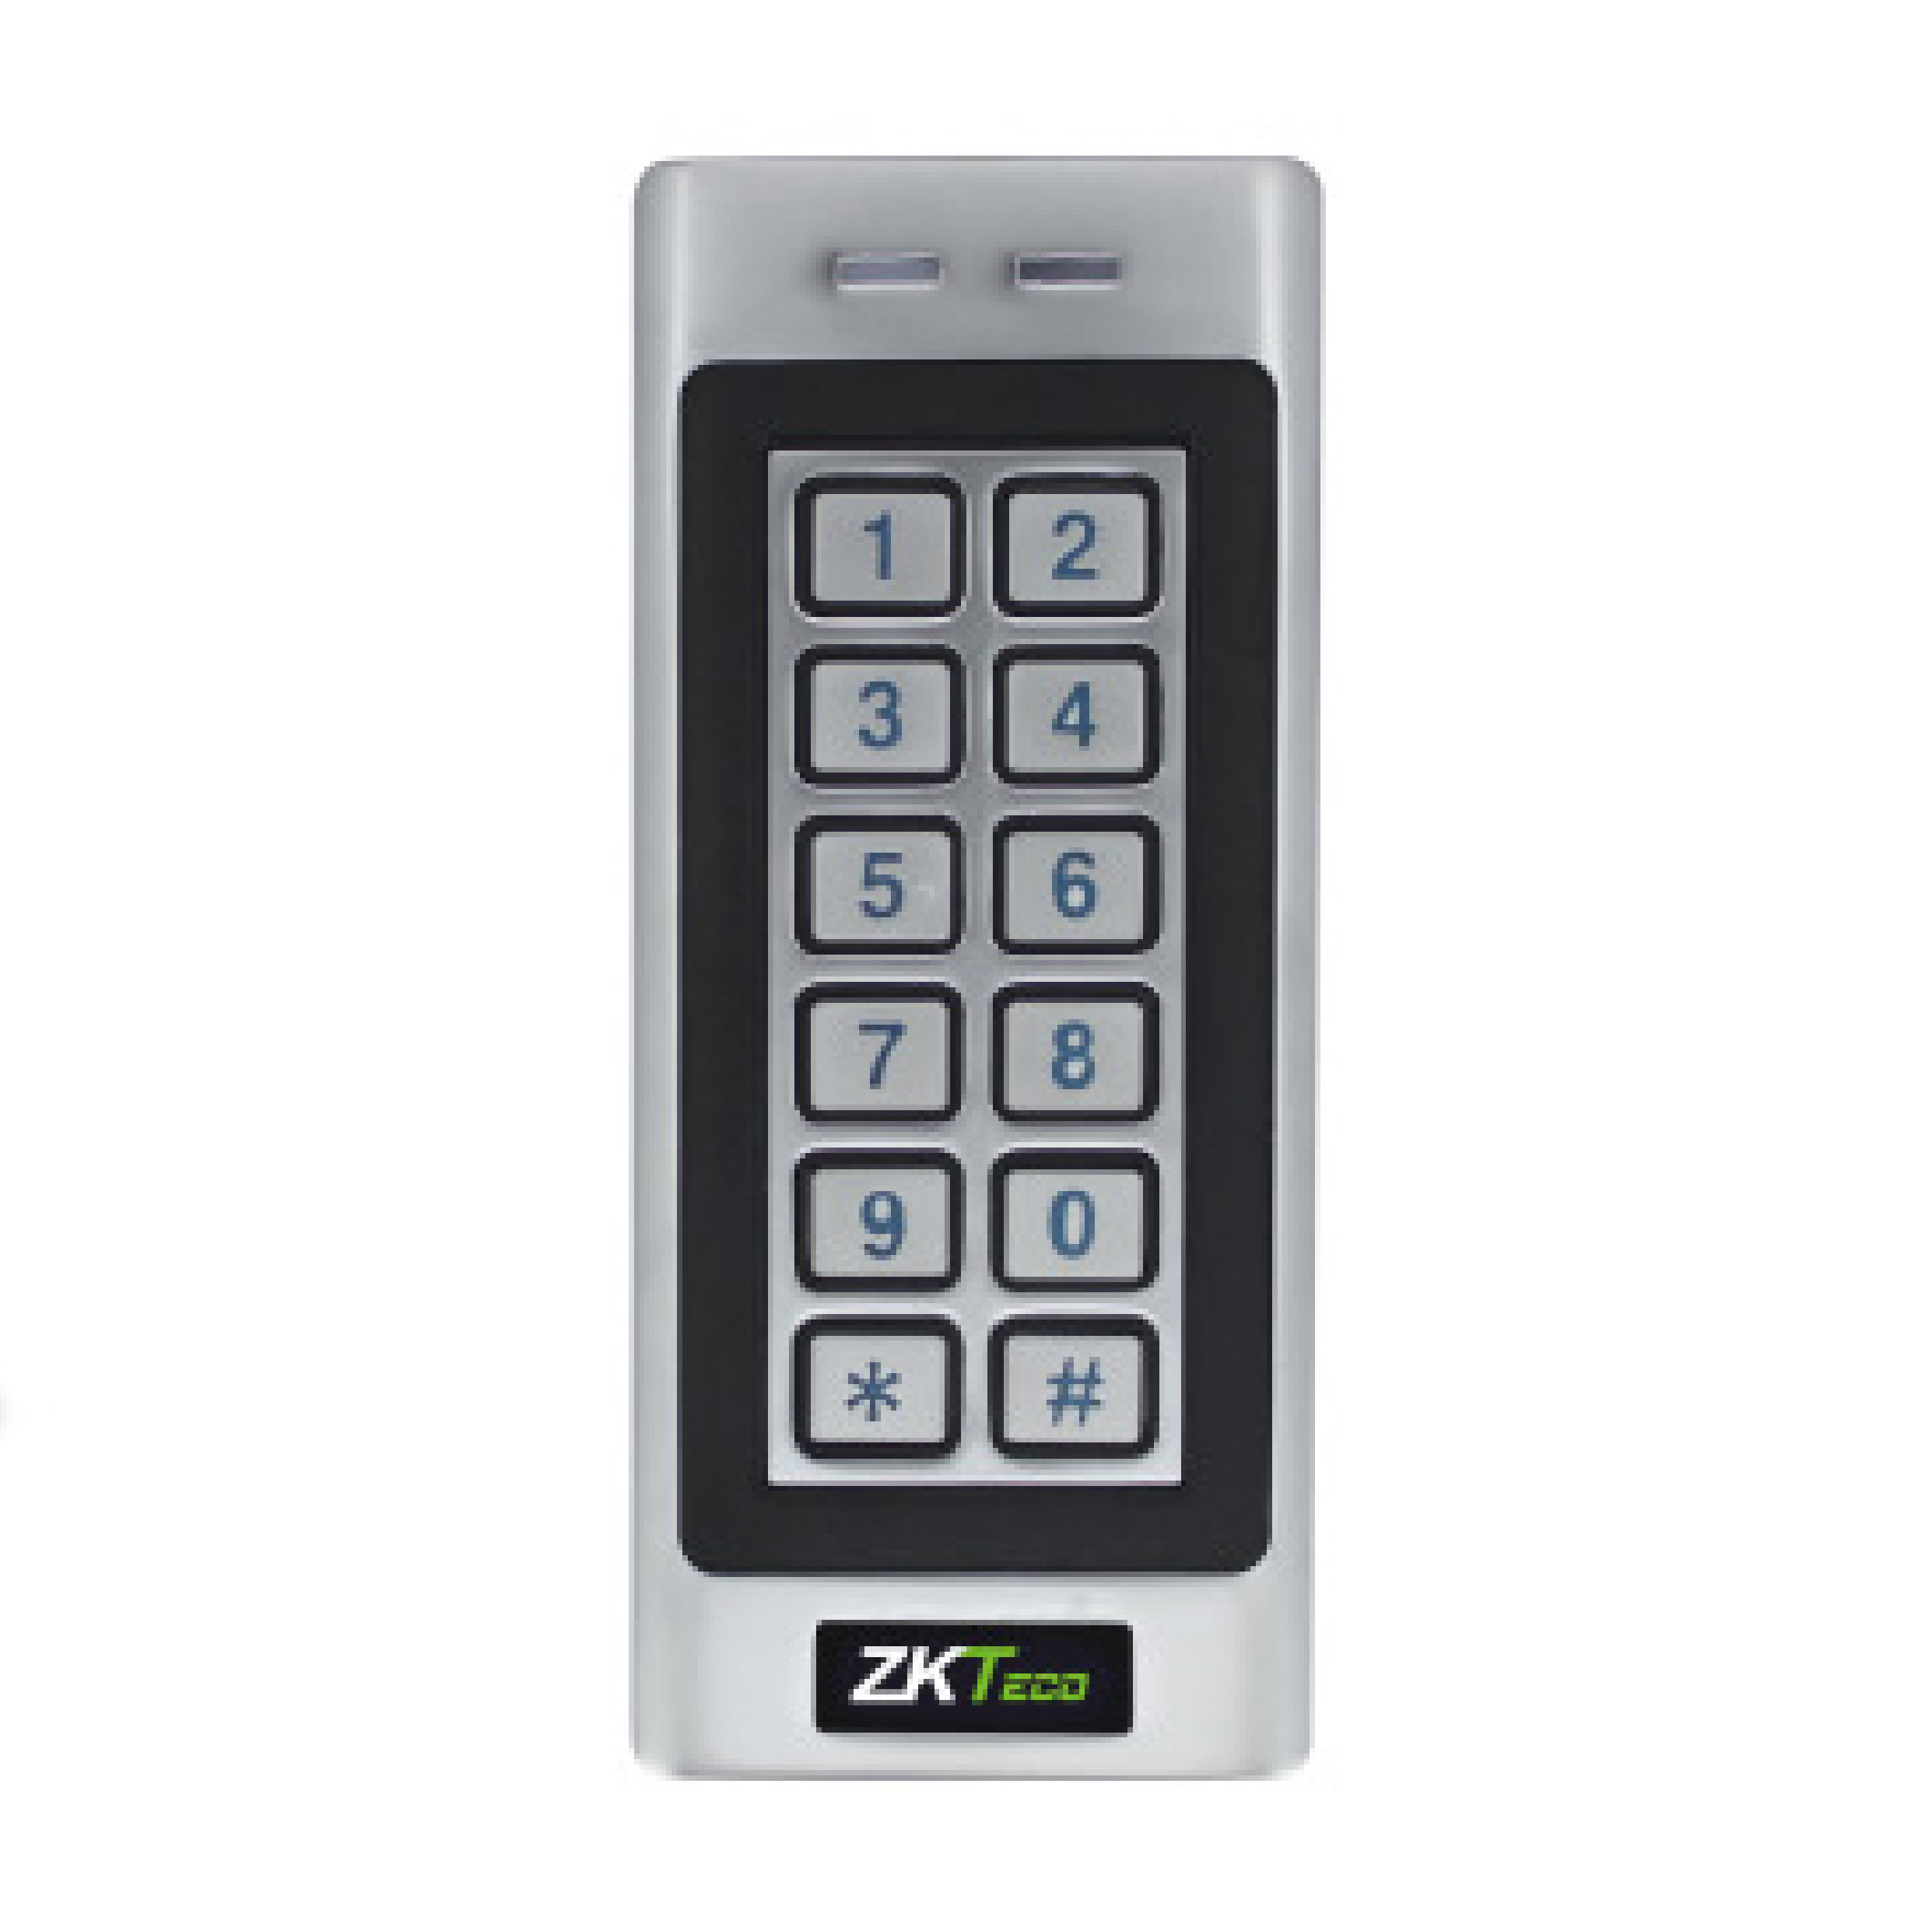 ZKTECO DF-V1-E M Access control